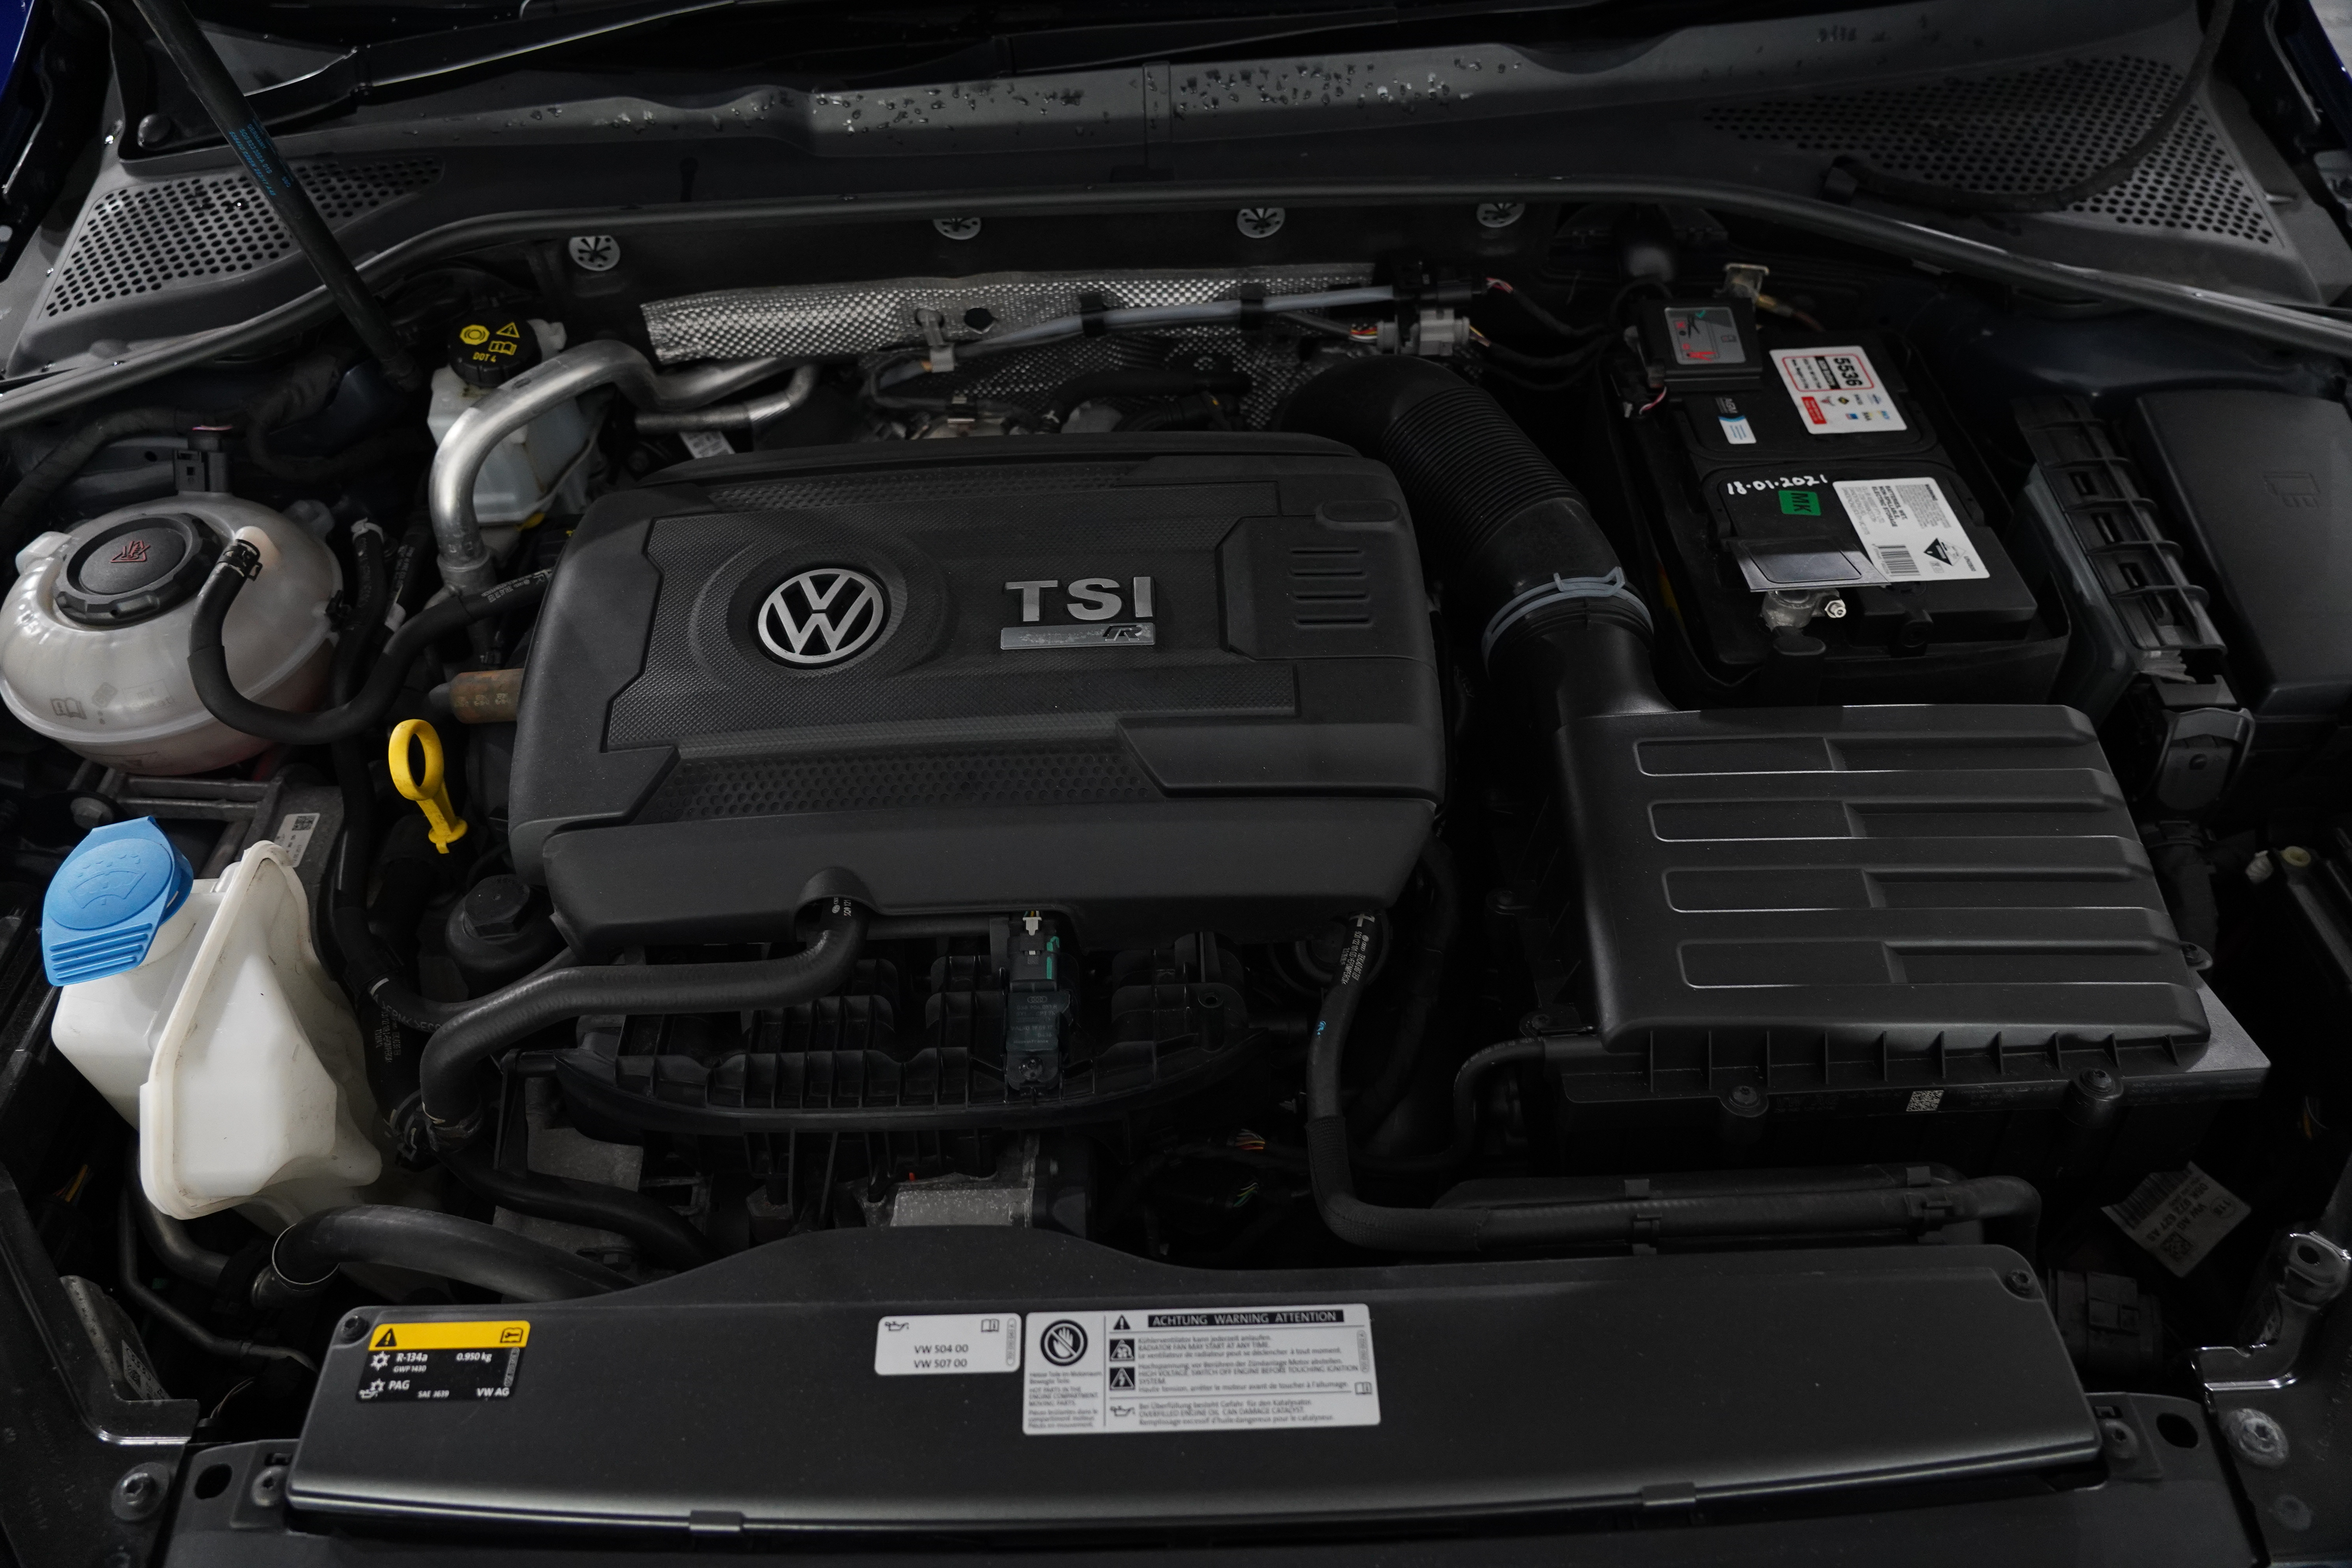 2018 Volkswagen Golf Volkswagen Golf R Grid Edition 7 Sp Auto Direct Shift R Grid Edition Hatch Image 29